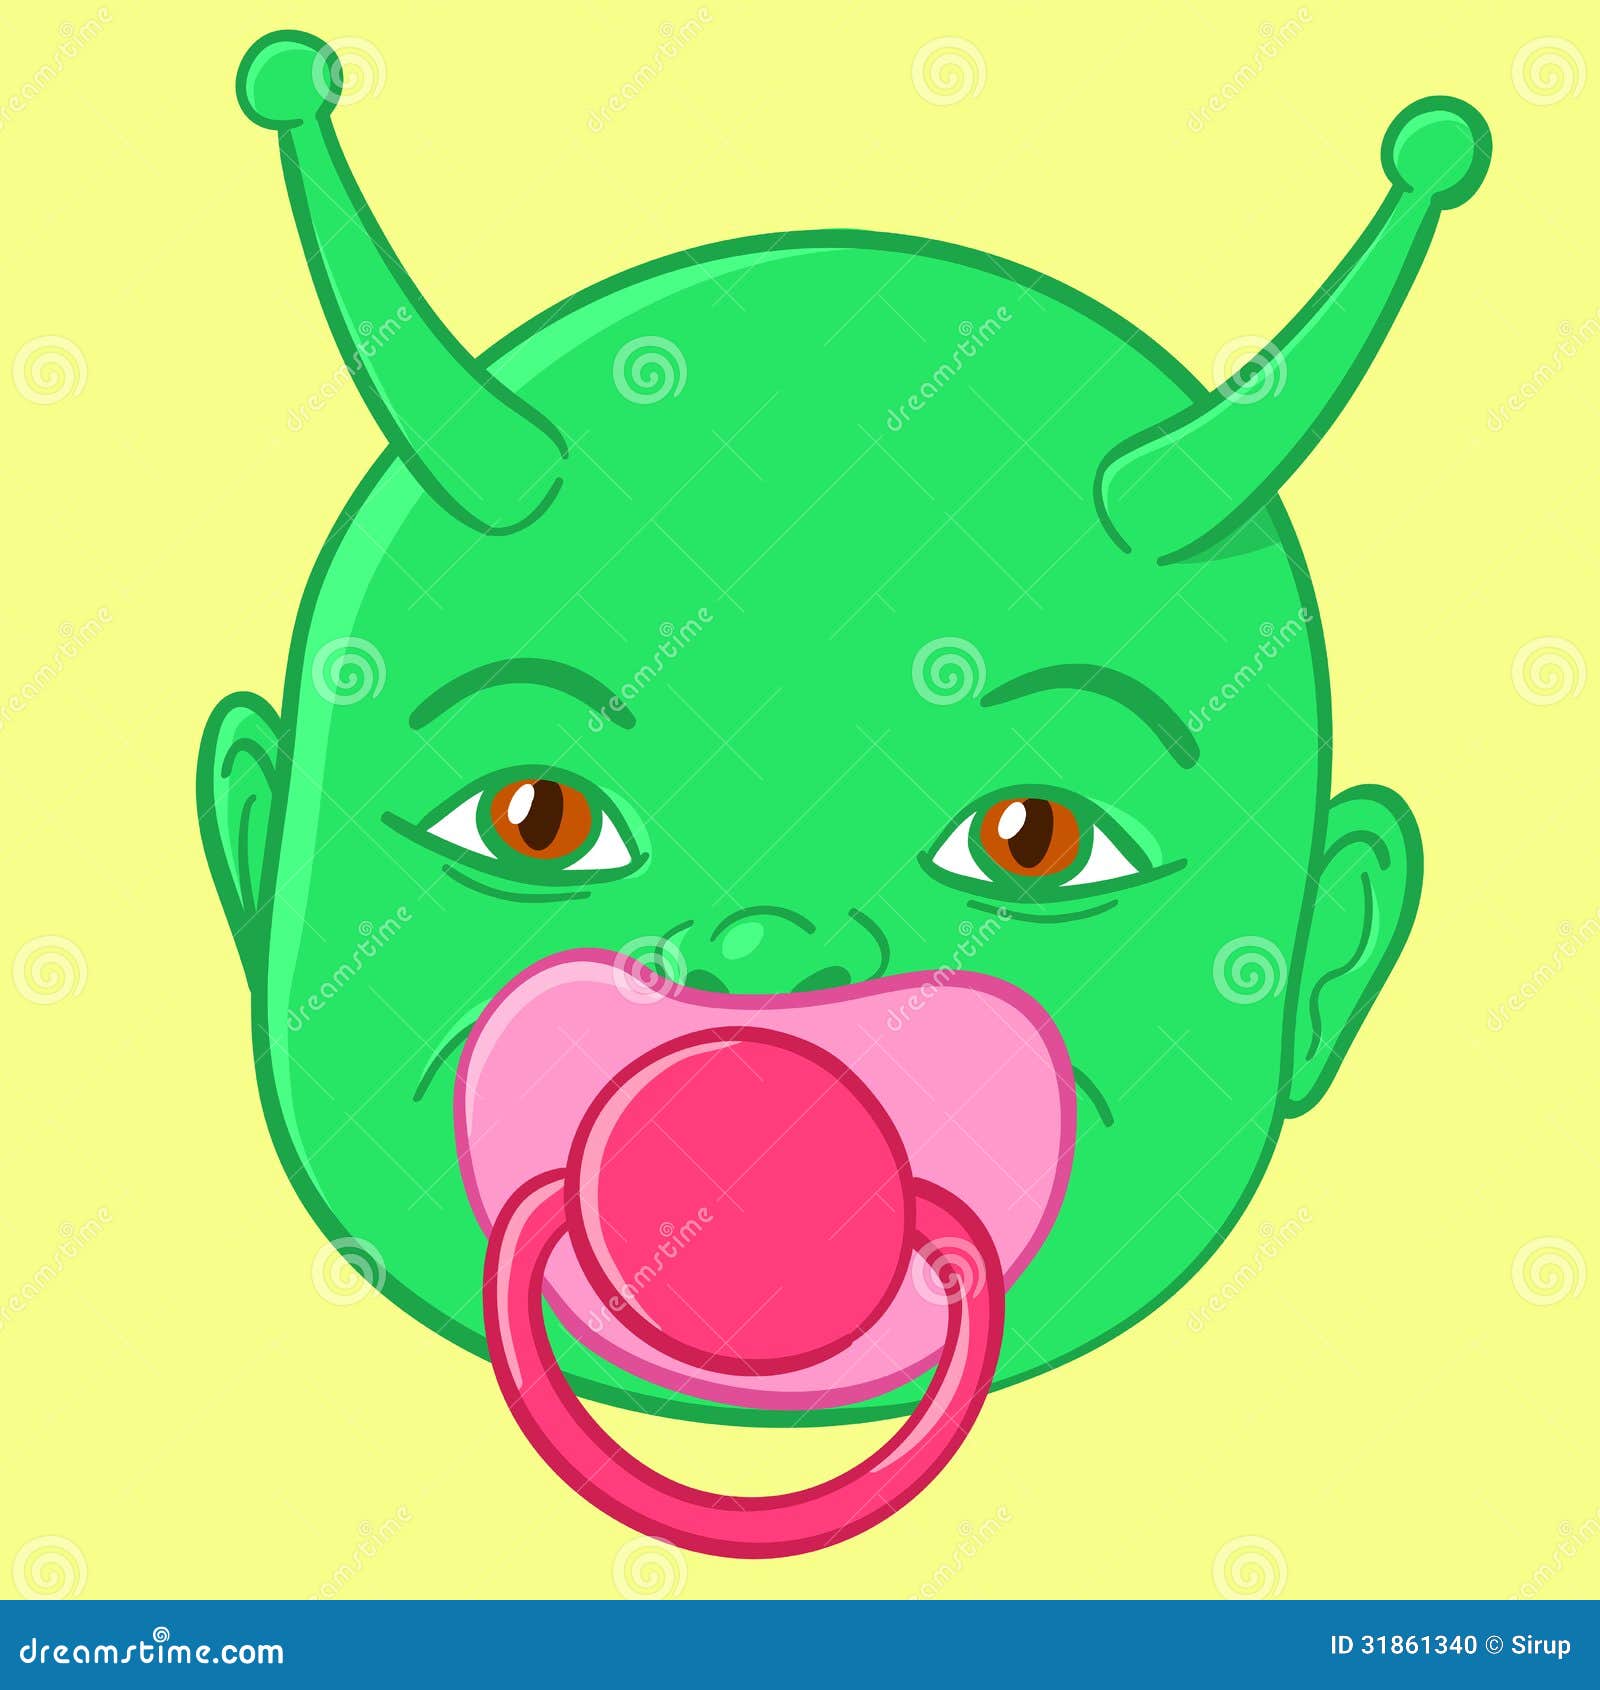 Alienígena de desenho animado verde com cabeça grande e olhos